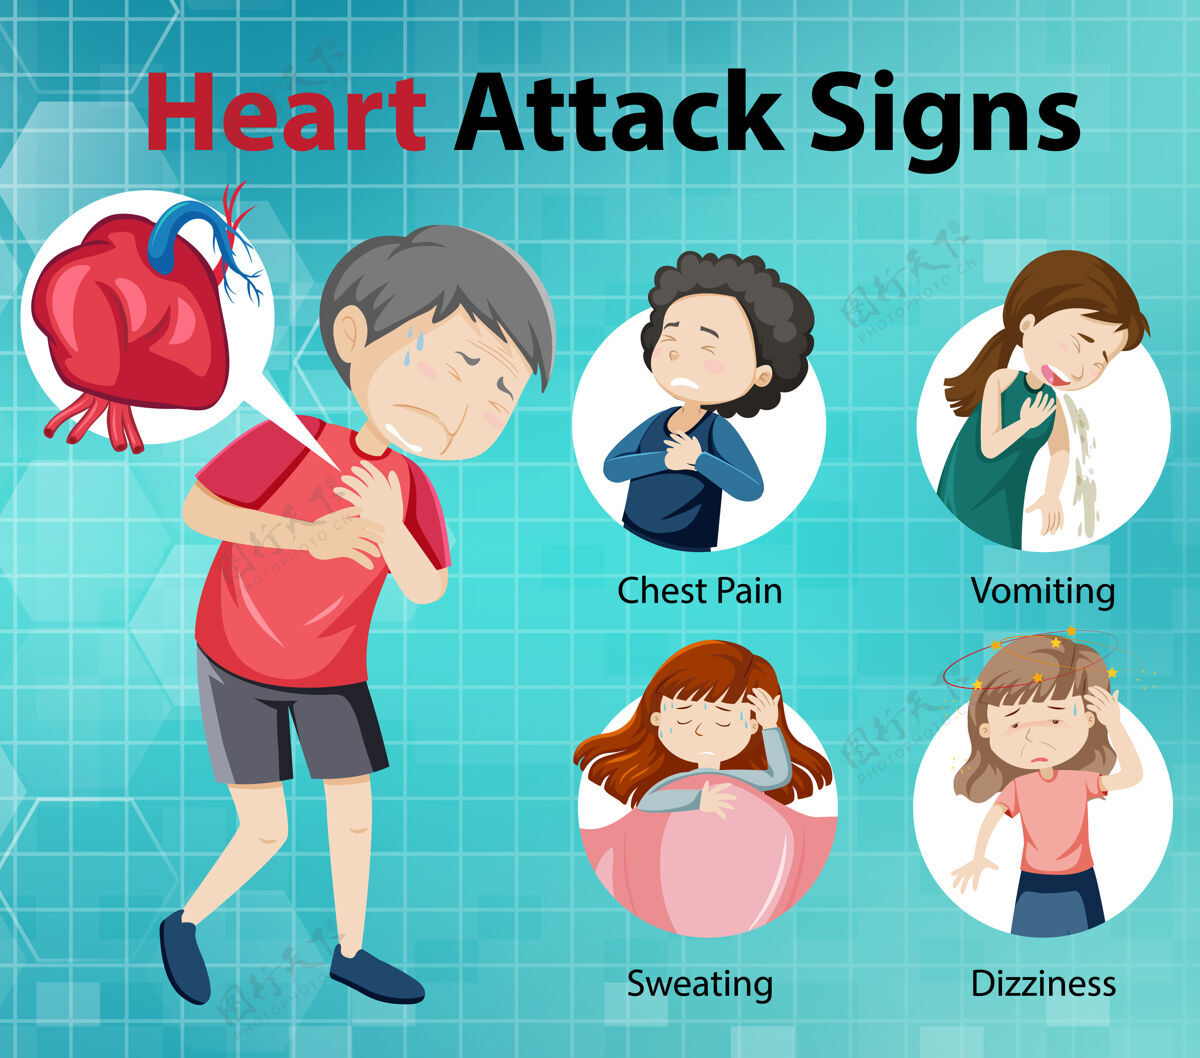 慢性心脏病发作症状或警告信号信息图空白学习学习